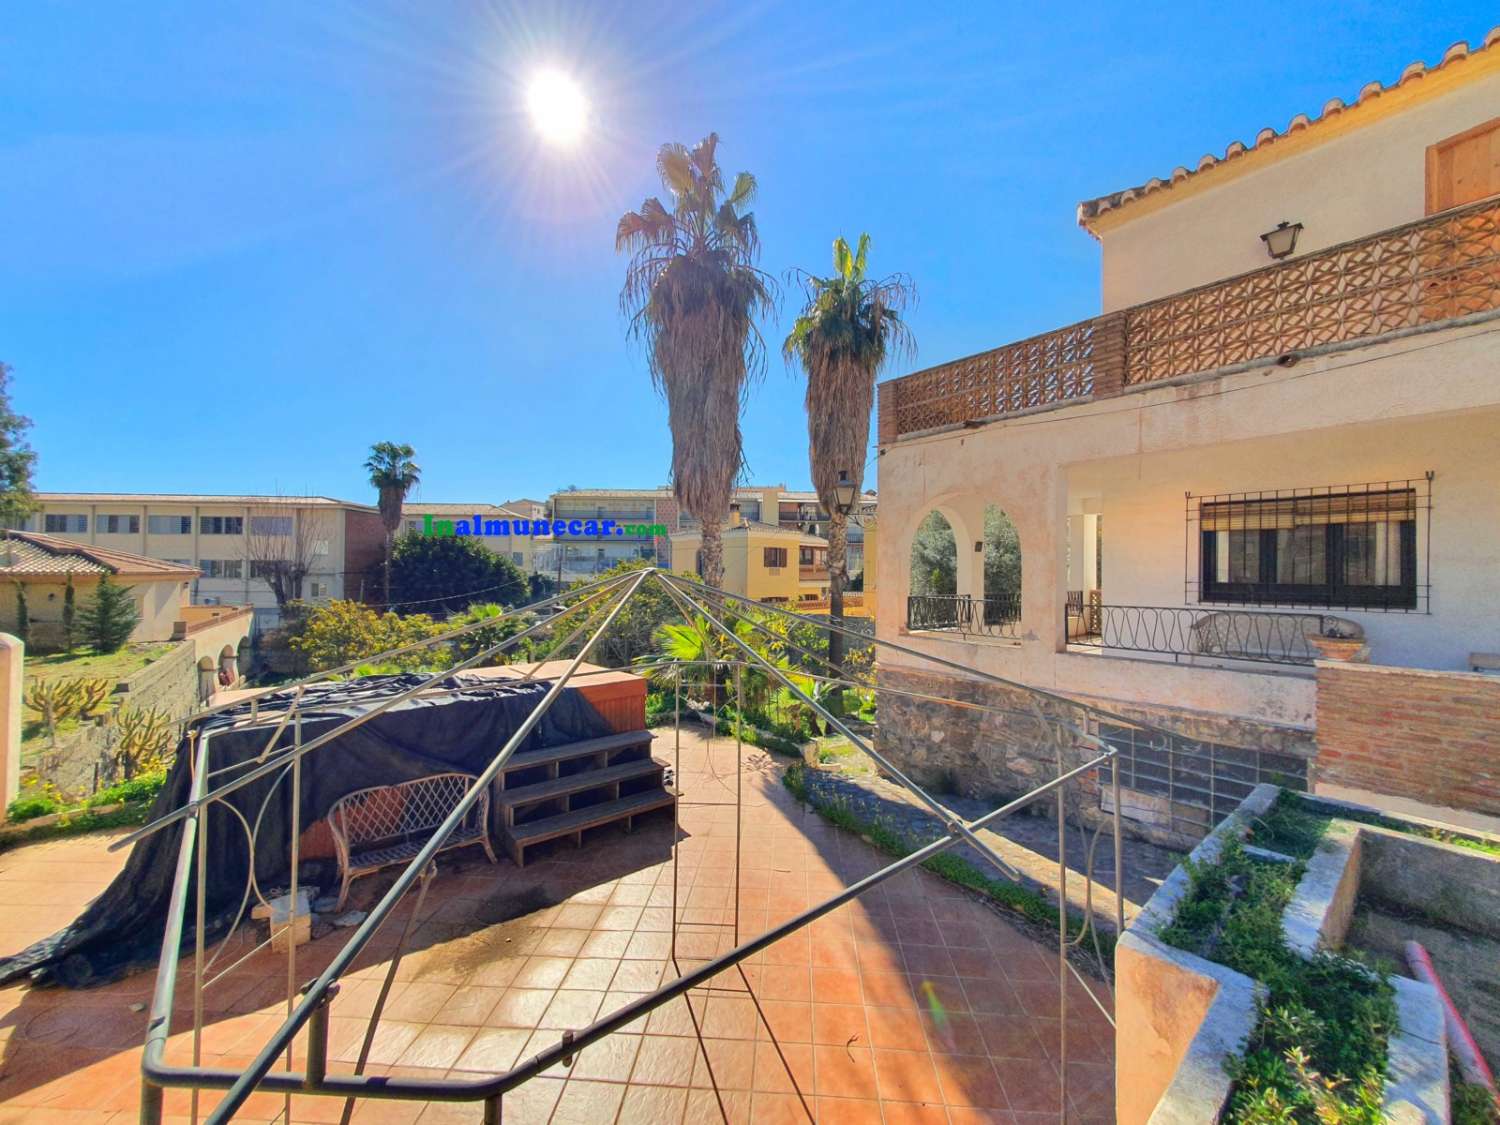 Villa en venta en Almuñecar cerca de la playa de San Cristobal y con amplia parcela con frutales